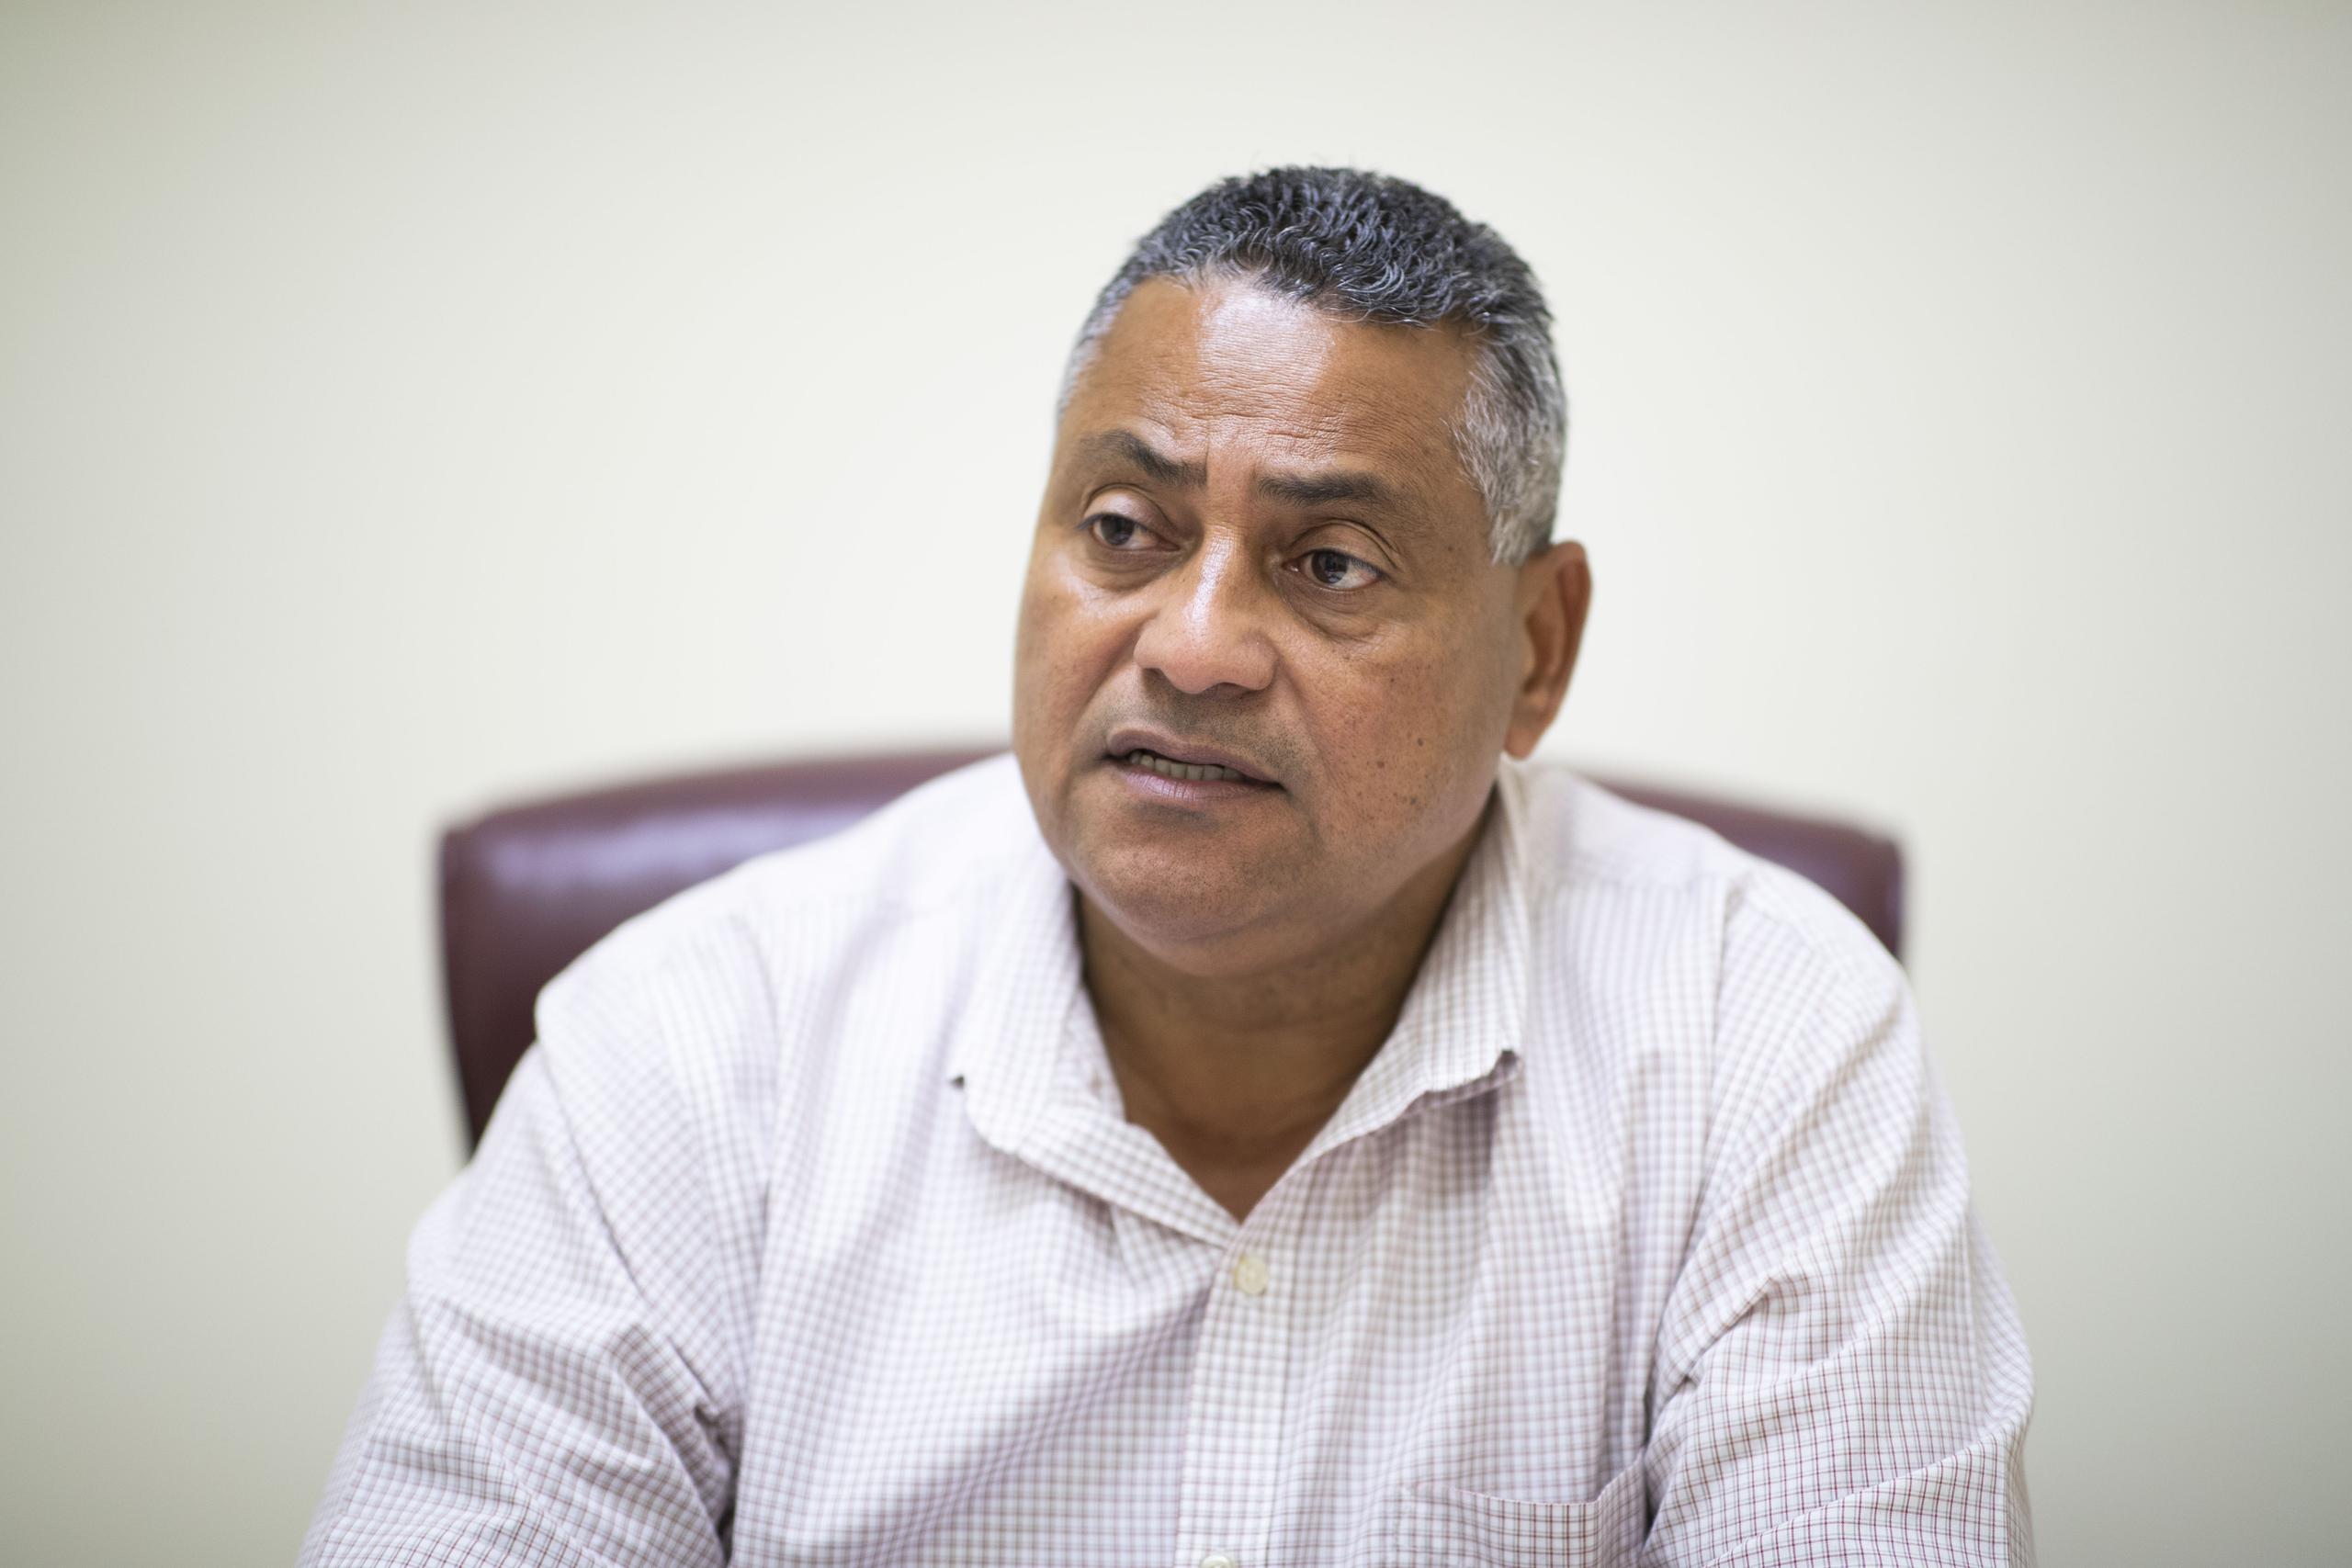 El alcalde de Humacao Luis Raúl Sánchez Hernández., dijo que “mi responsabilidad como alcalde es velar por la salud de nuestra gente de Humacao".